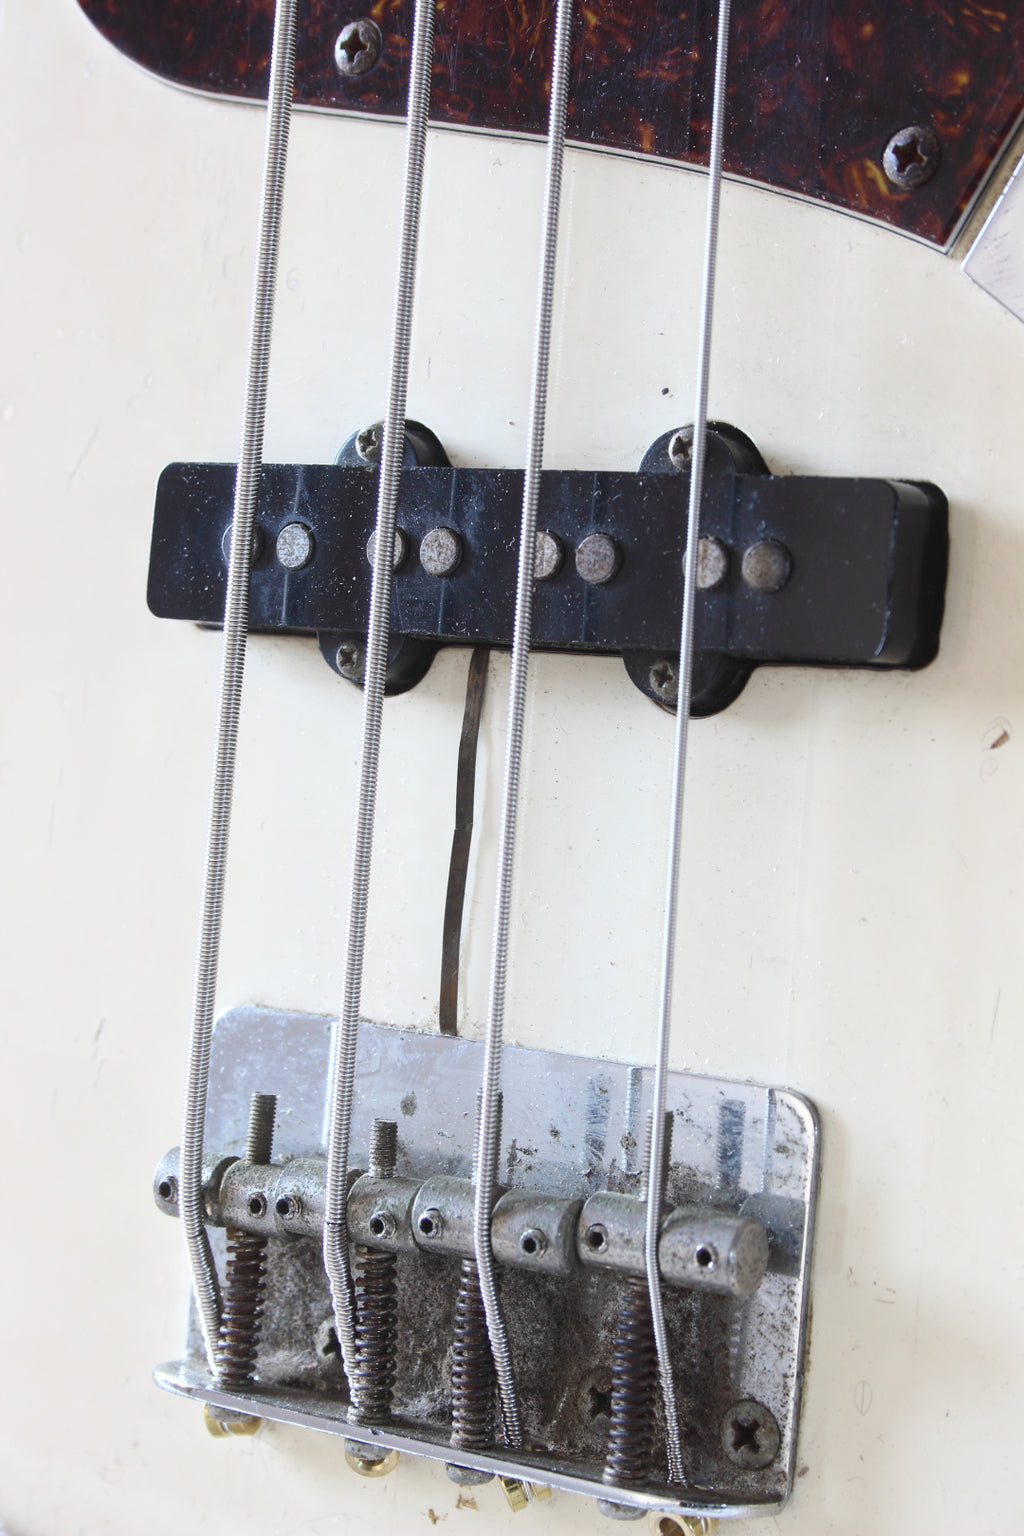 Squier MIJ Jazz Bass JV-Serial SJB-55 Vintage White 1984